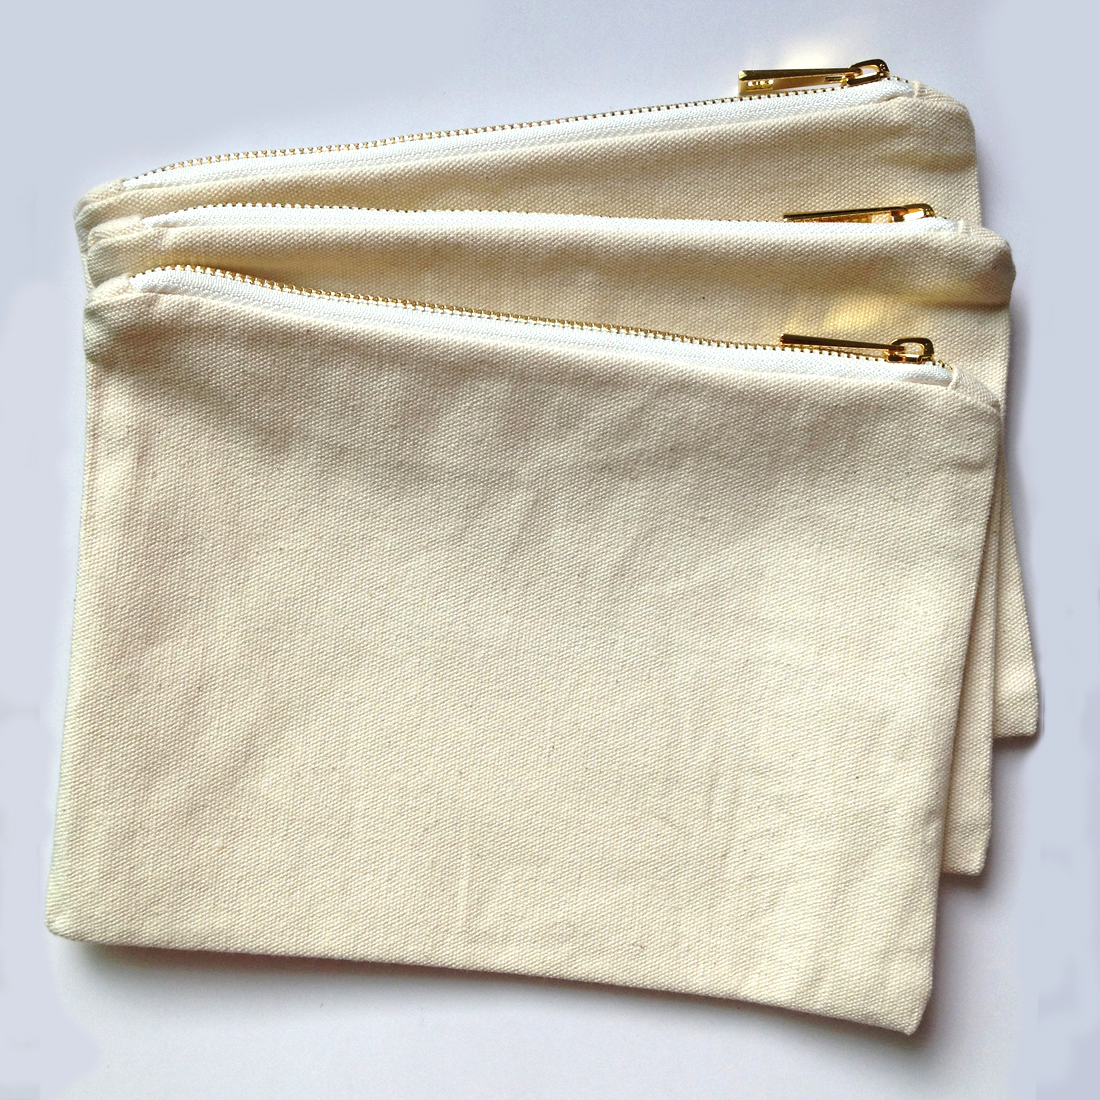 100 pçs / lote 7x10 polegadas em branco natural de algodão lona saco de maquiagem com correspondência de cor forro em branco saco de cosmética para impressão DIY em estoque livre DHL